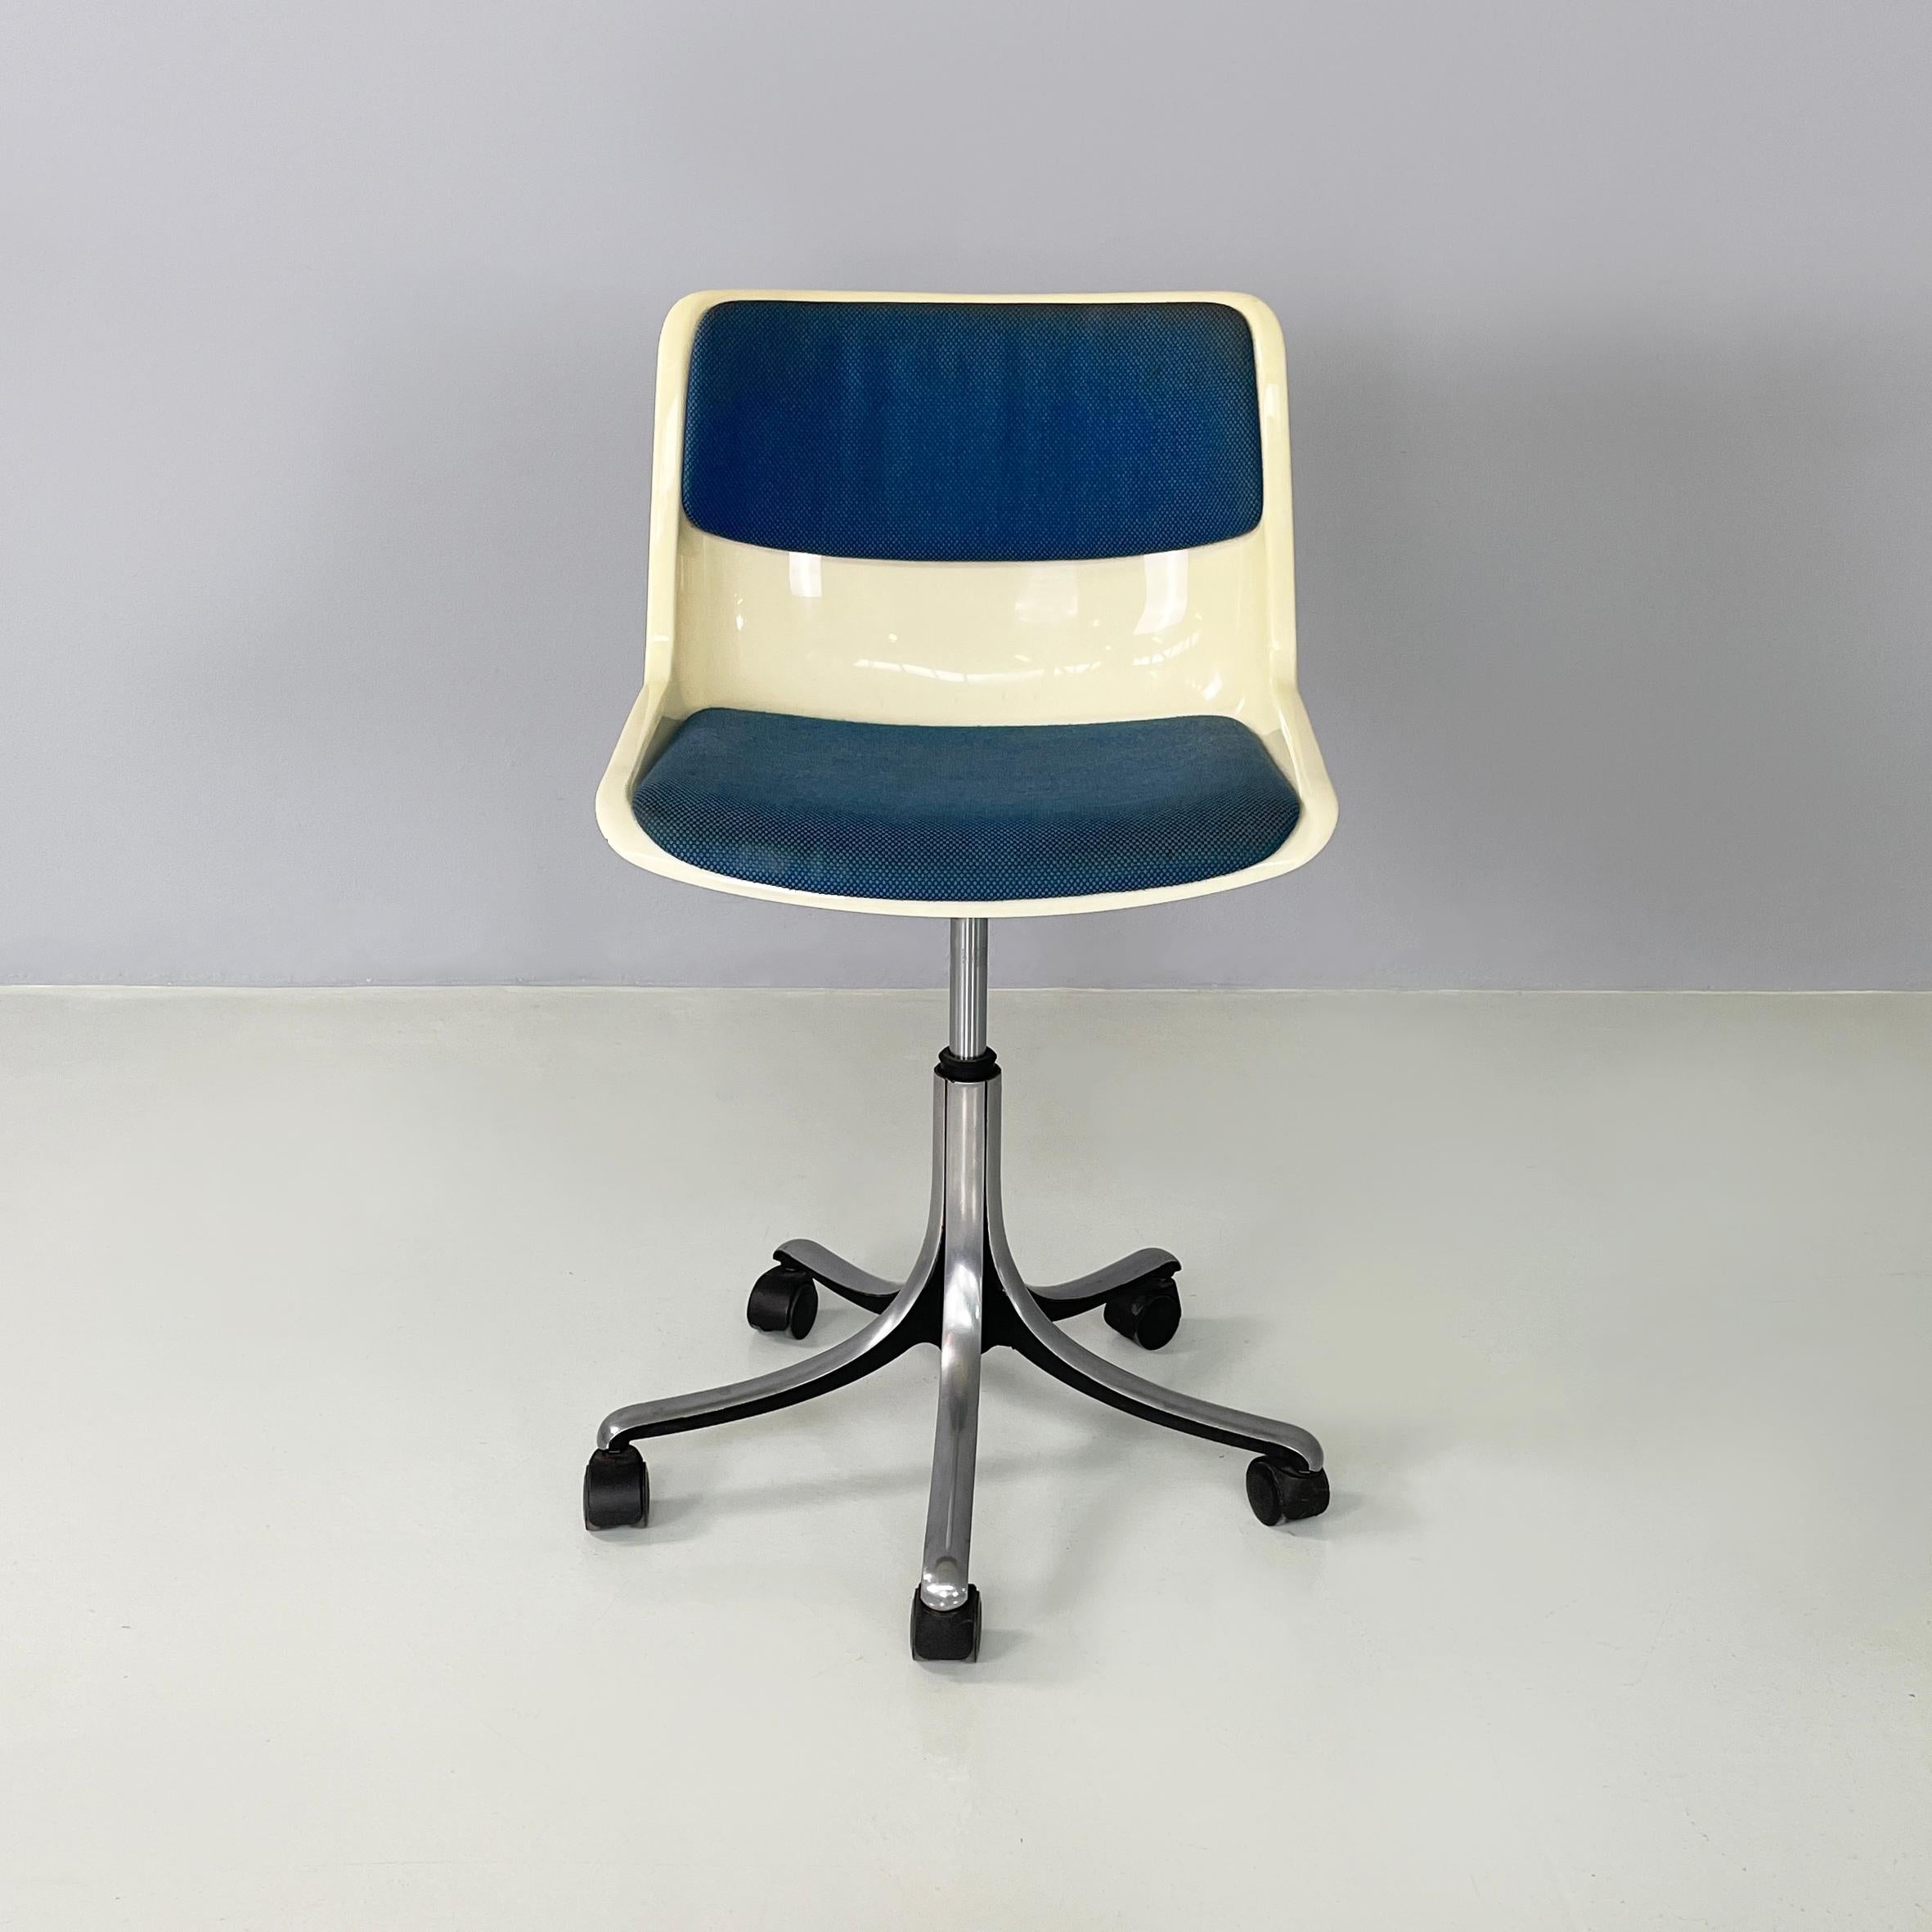 Chaise de bureau moderne italienne Modus par Osvaldo Borsano pour Tecno, années 1980
Chaise de bureau mod. Modus avec assise et dossier en plastique monocoque ivoire-blanc. L'assise et le dossier sont également pourvus d'un coussin rembourré,